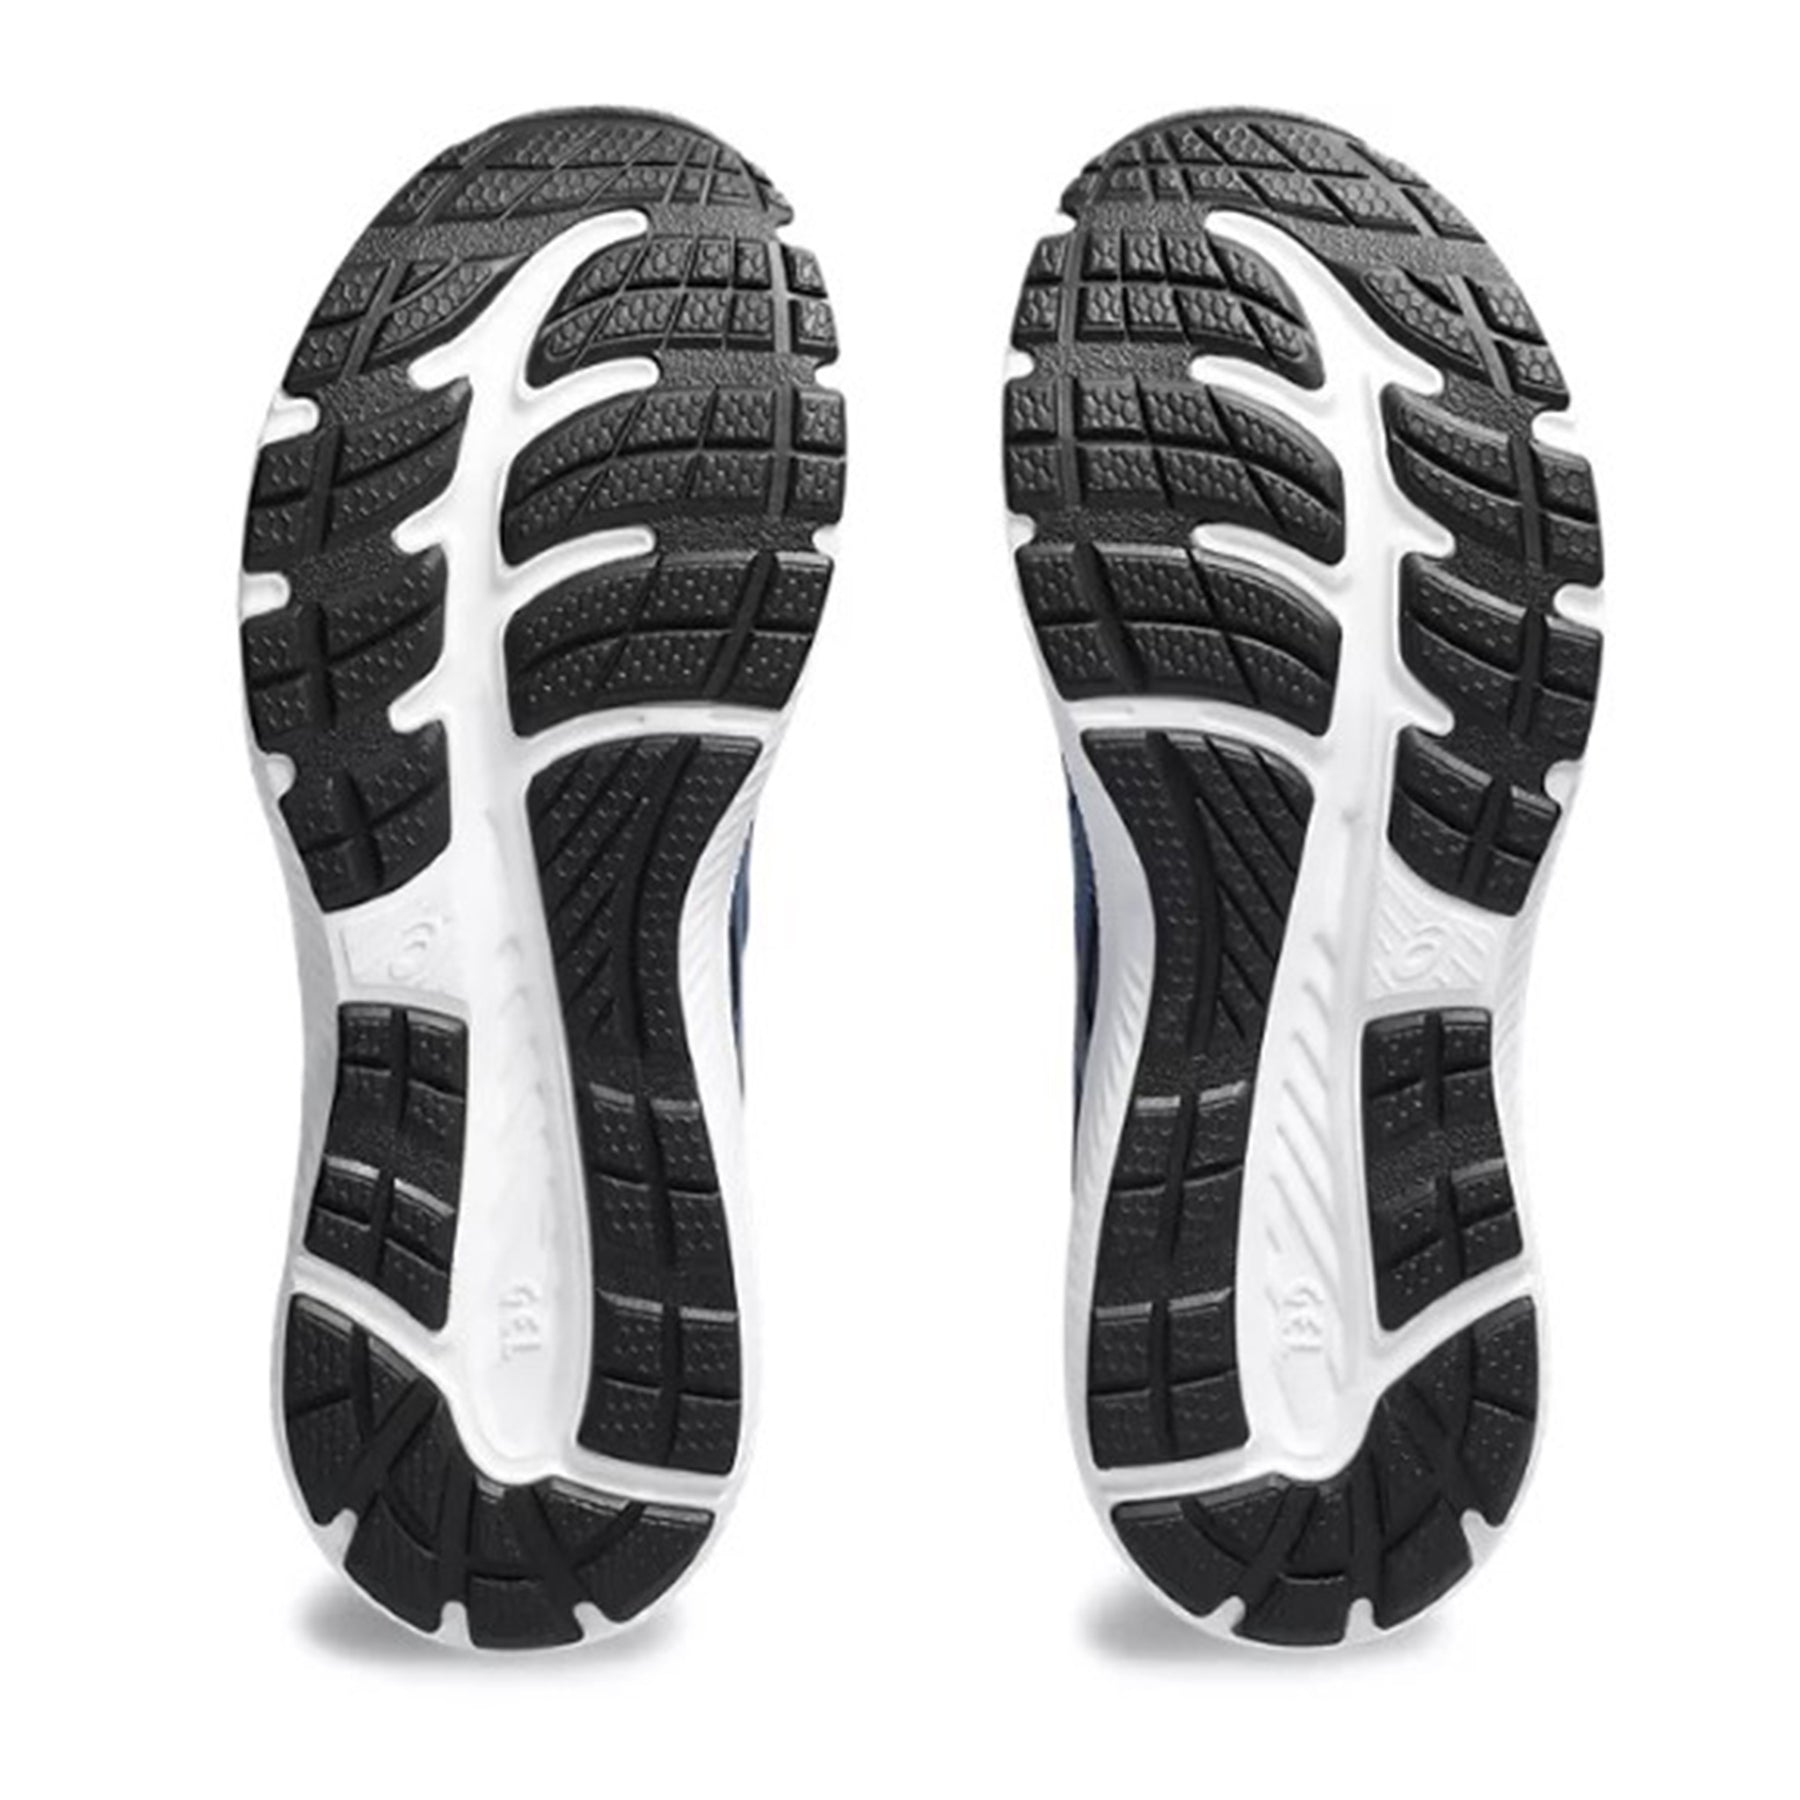 Asics Gel Contend 8 Mens Running Shoes: Deep Ocean/Black